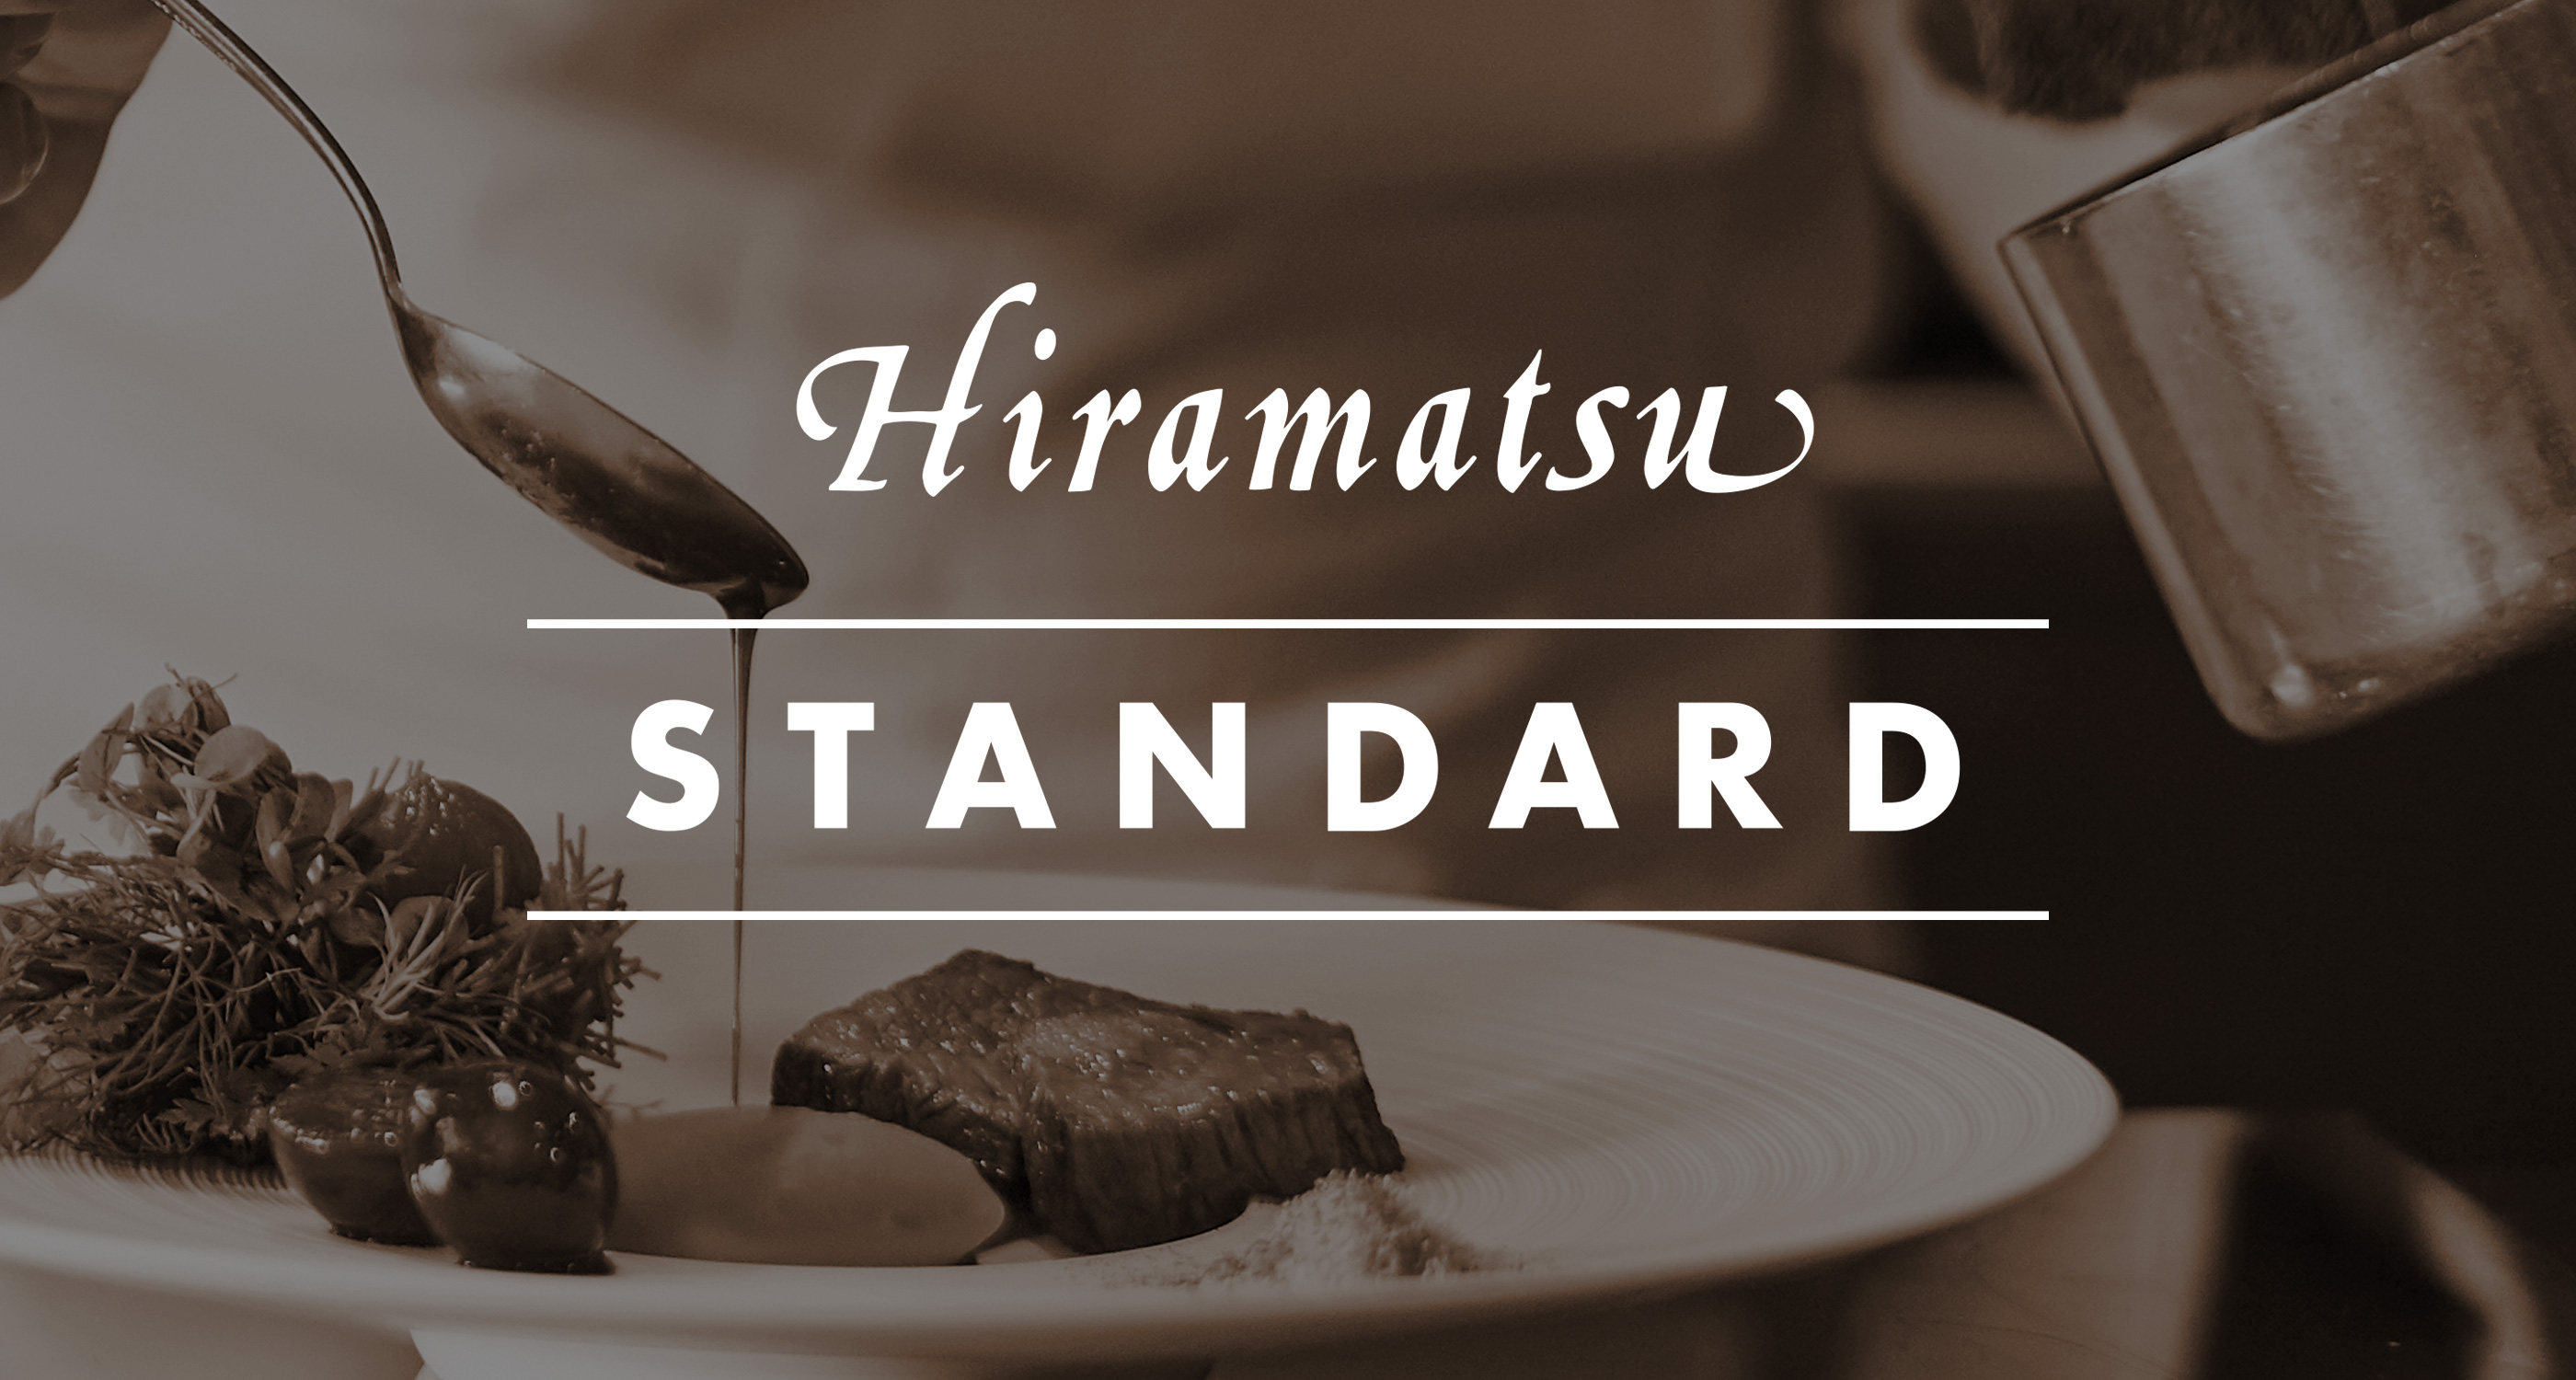 【株式会社ひらまつ】お客様の笑顔を守る徹底した安全基準「Hiramatsuスタンダード」が第二のステージへ。新たな取り組みを加え、さらなる強化を。